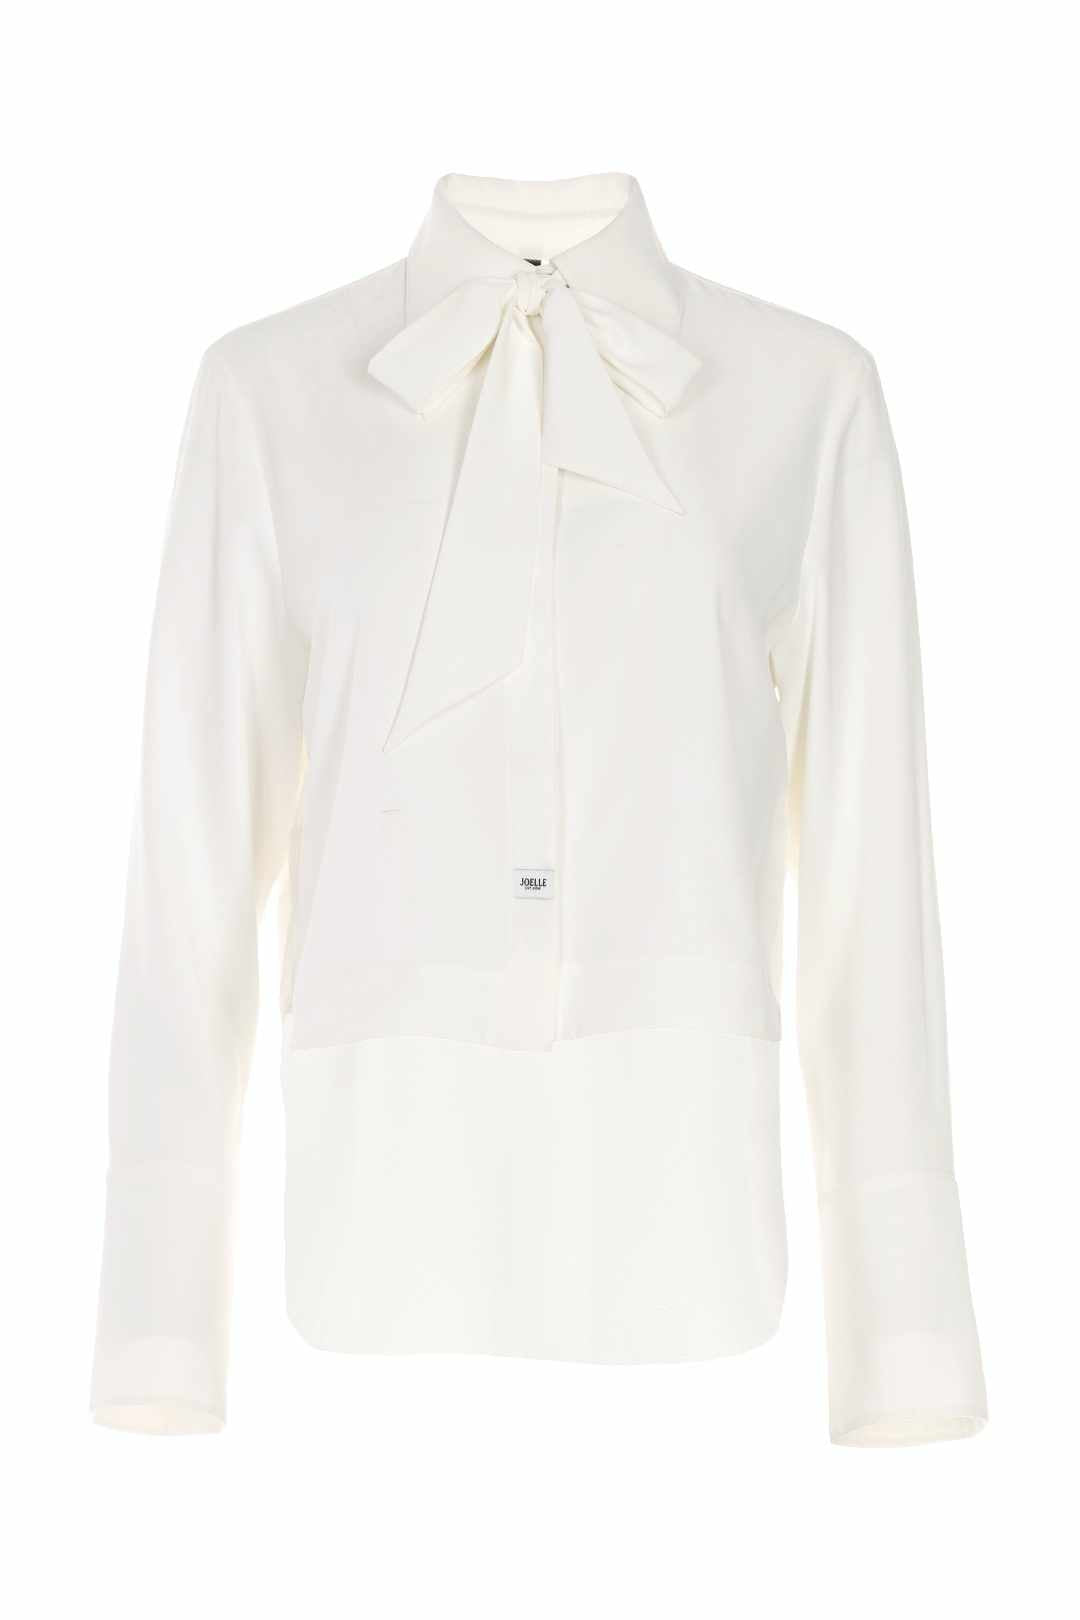 Short white long-sleeved shirt | Jones